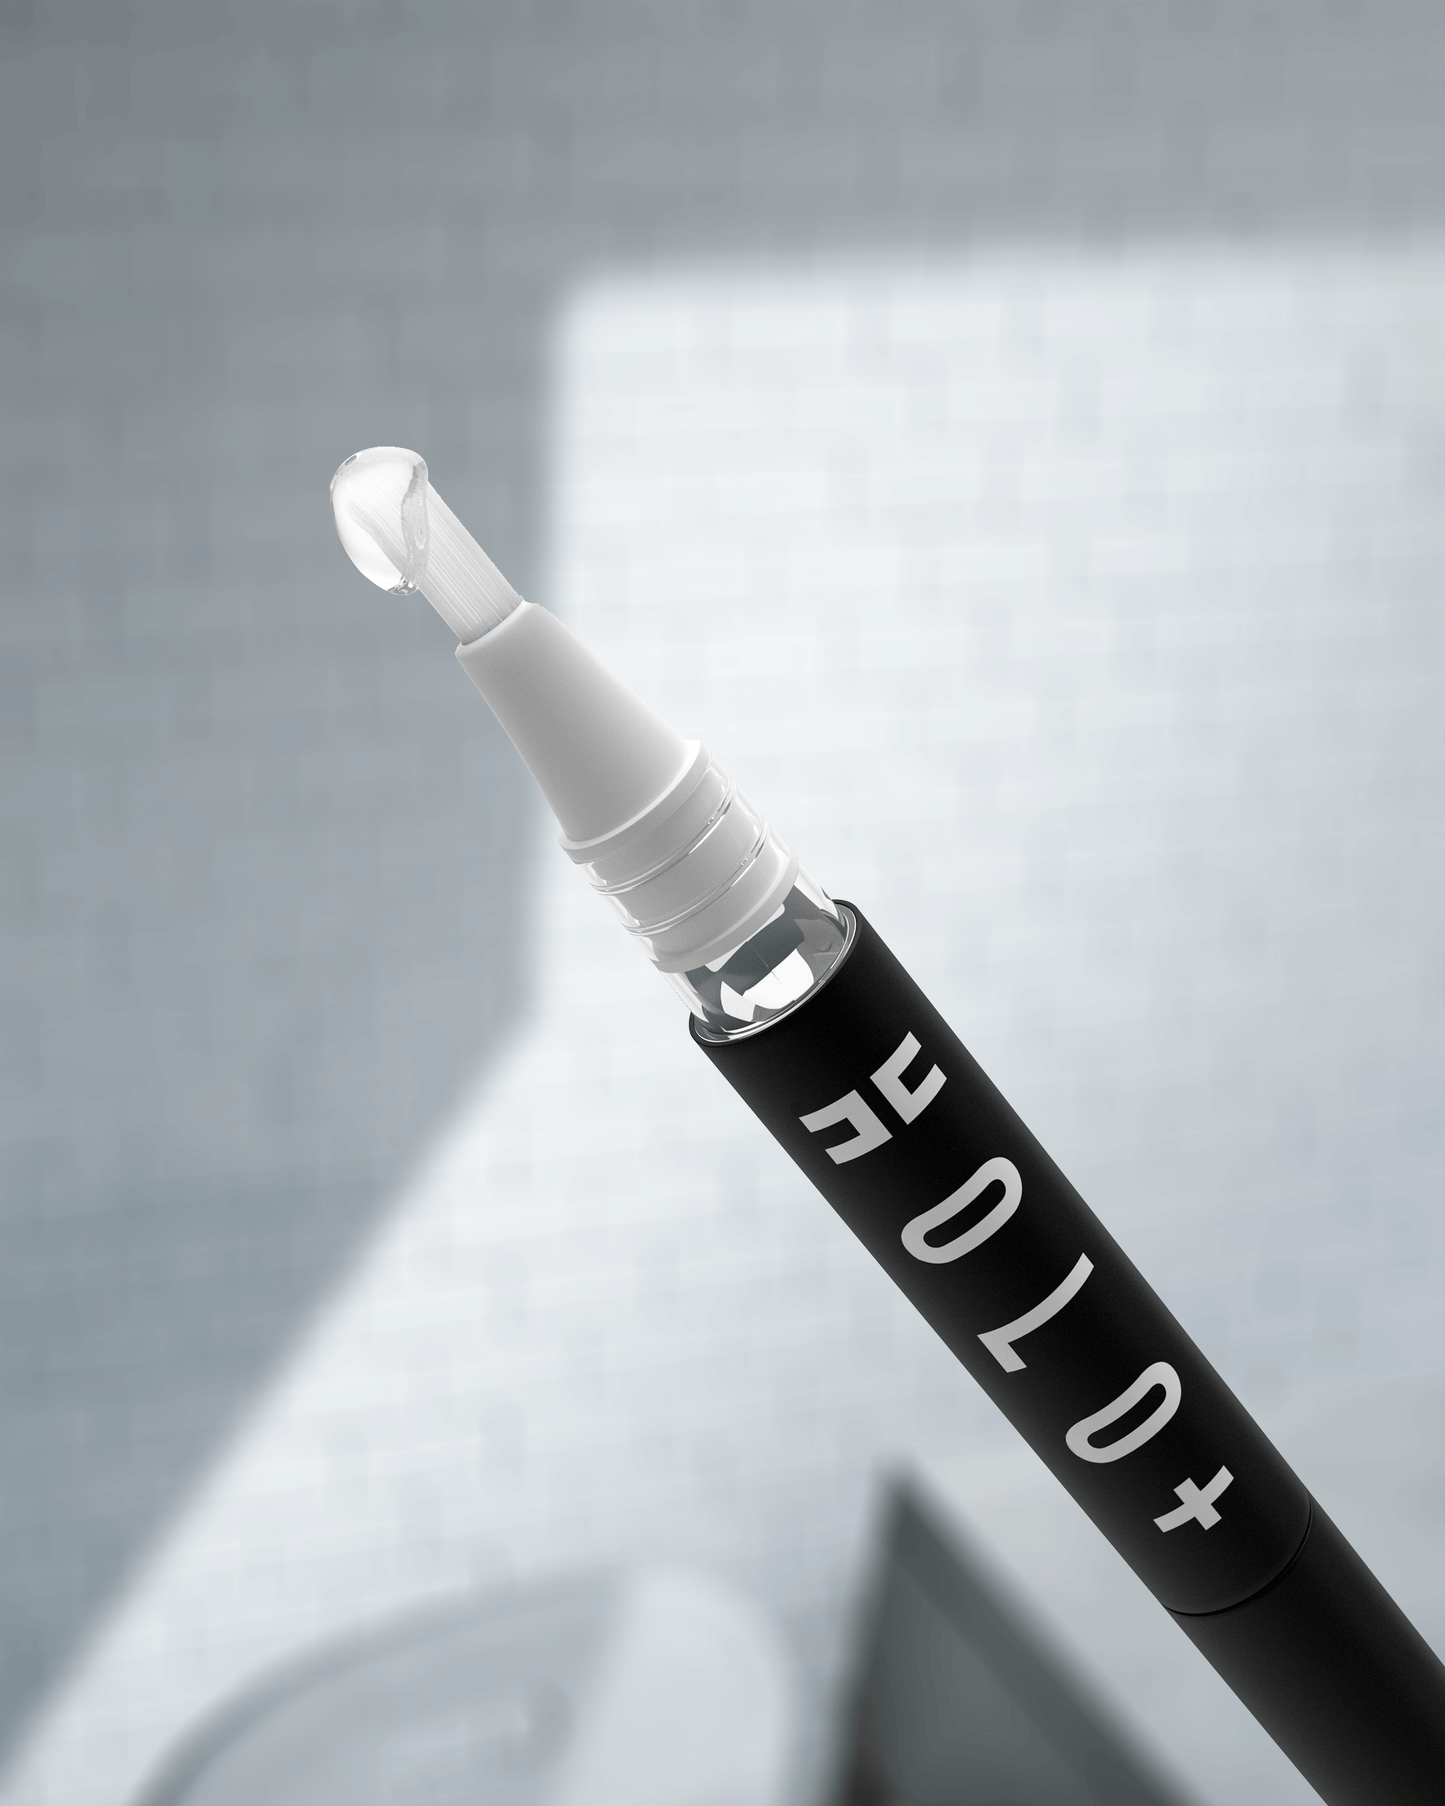 Holo Extra Strength Pen Refill - Holo Teeth Whitening